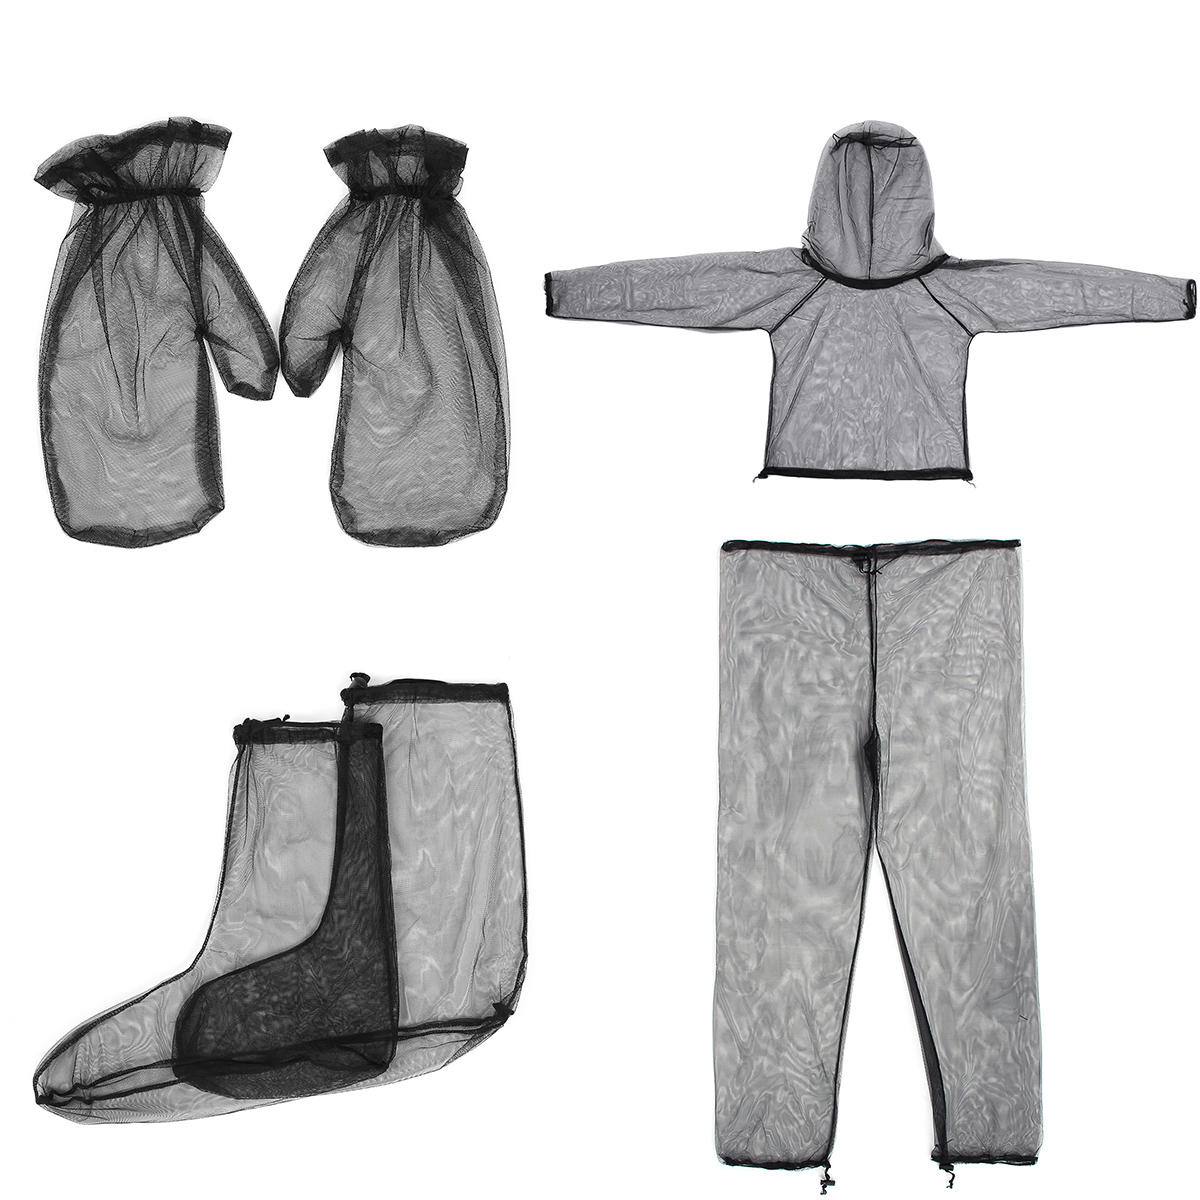 Ensemble léger de voyage et de camping en maille haute densité composé de veste, pantalon, gants et chaussettes anti-moustiques.